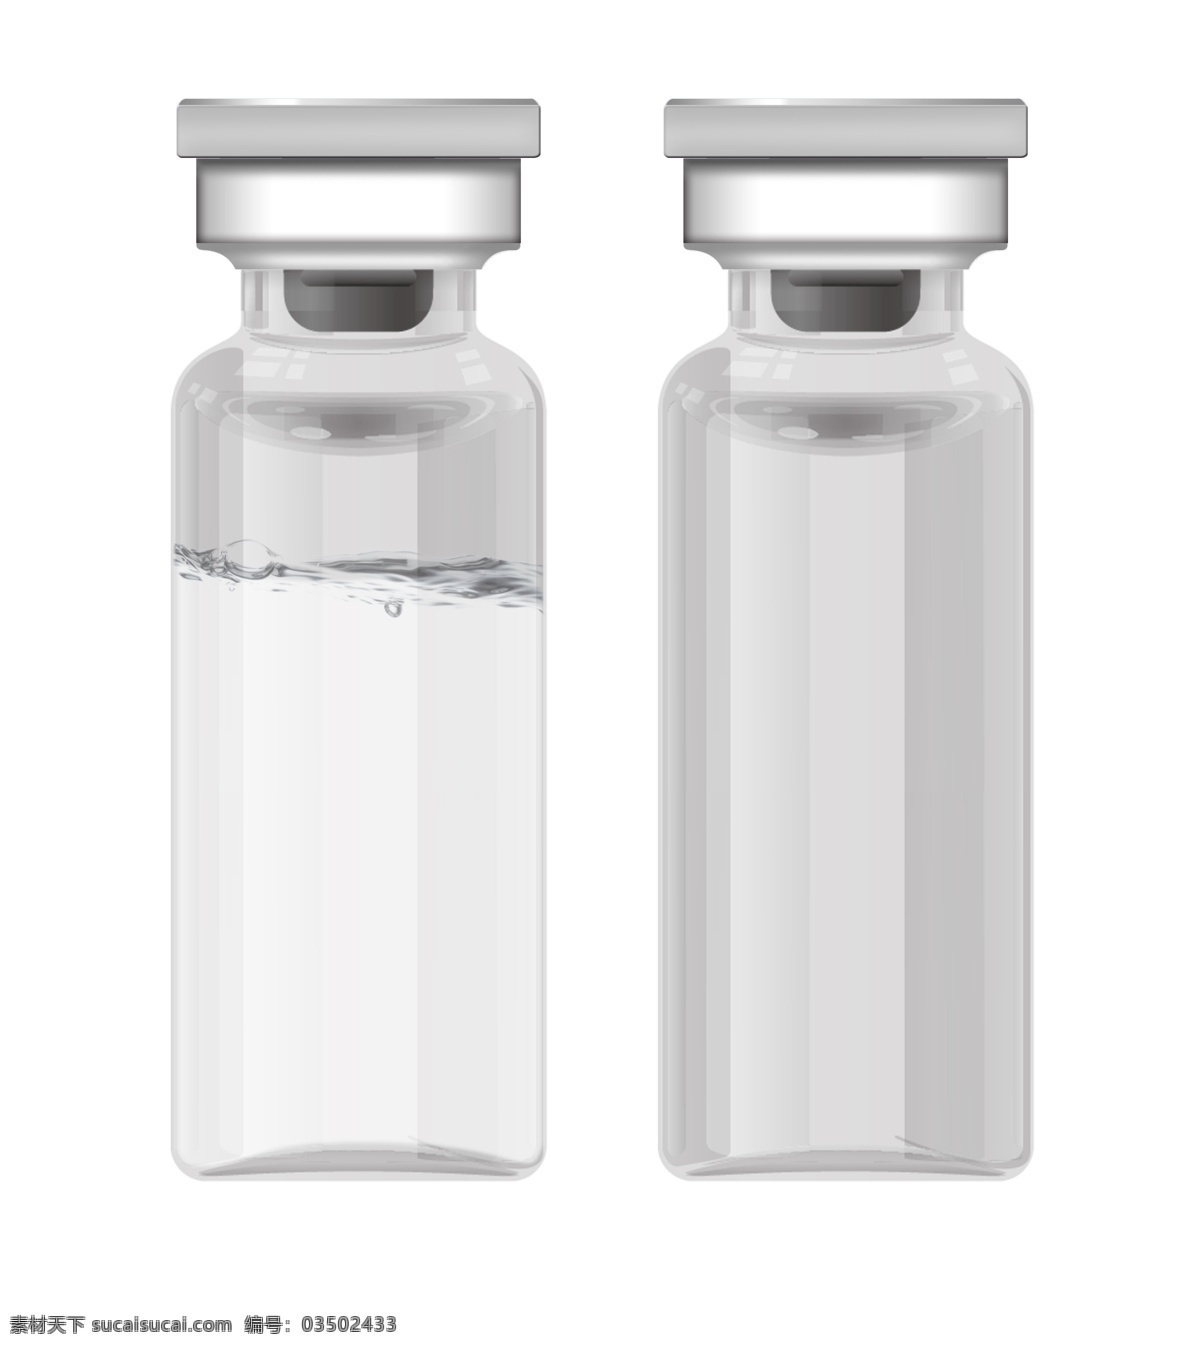 空白 原液 玻璃 瓶子 空白玻璃瓶子 空白原液瓶子 原液玻璃瓶 化妆品 玻璃瓶 瓶 化学 样机 透明玻璃瓶 化学玻璃瓶 医学瓶子 医院